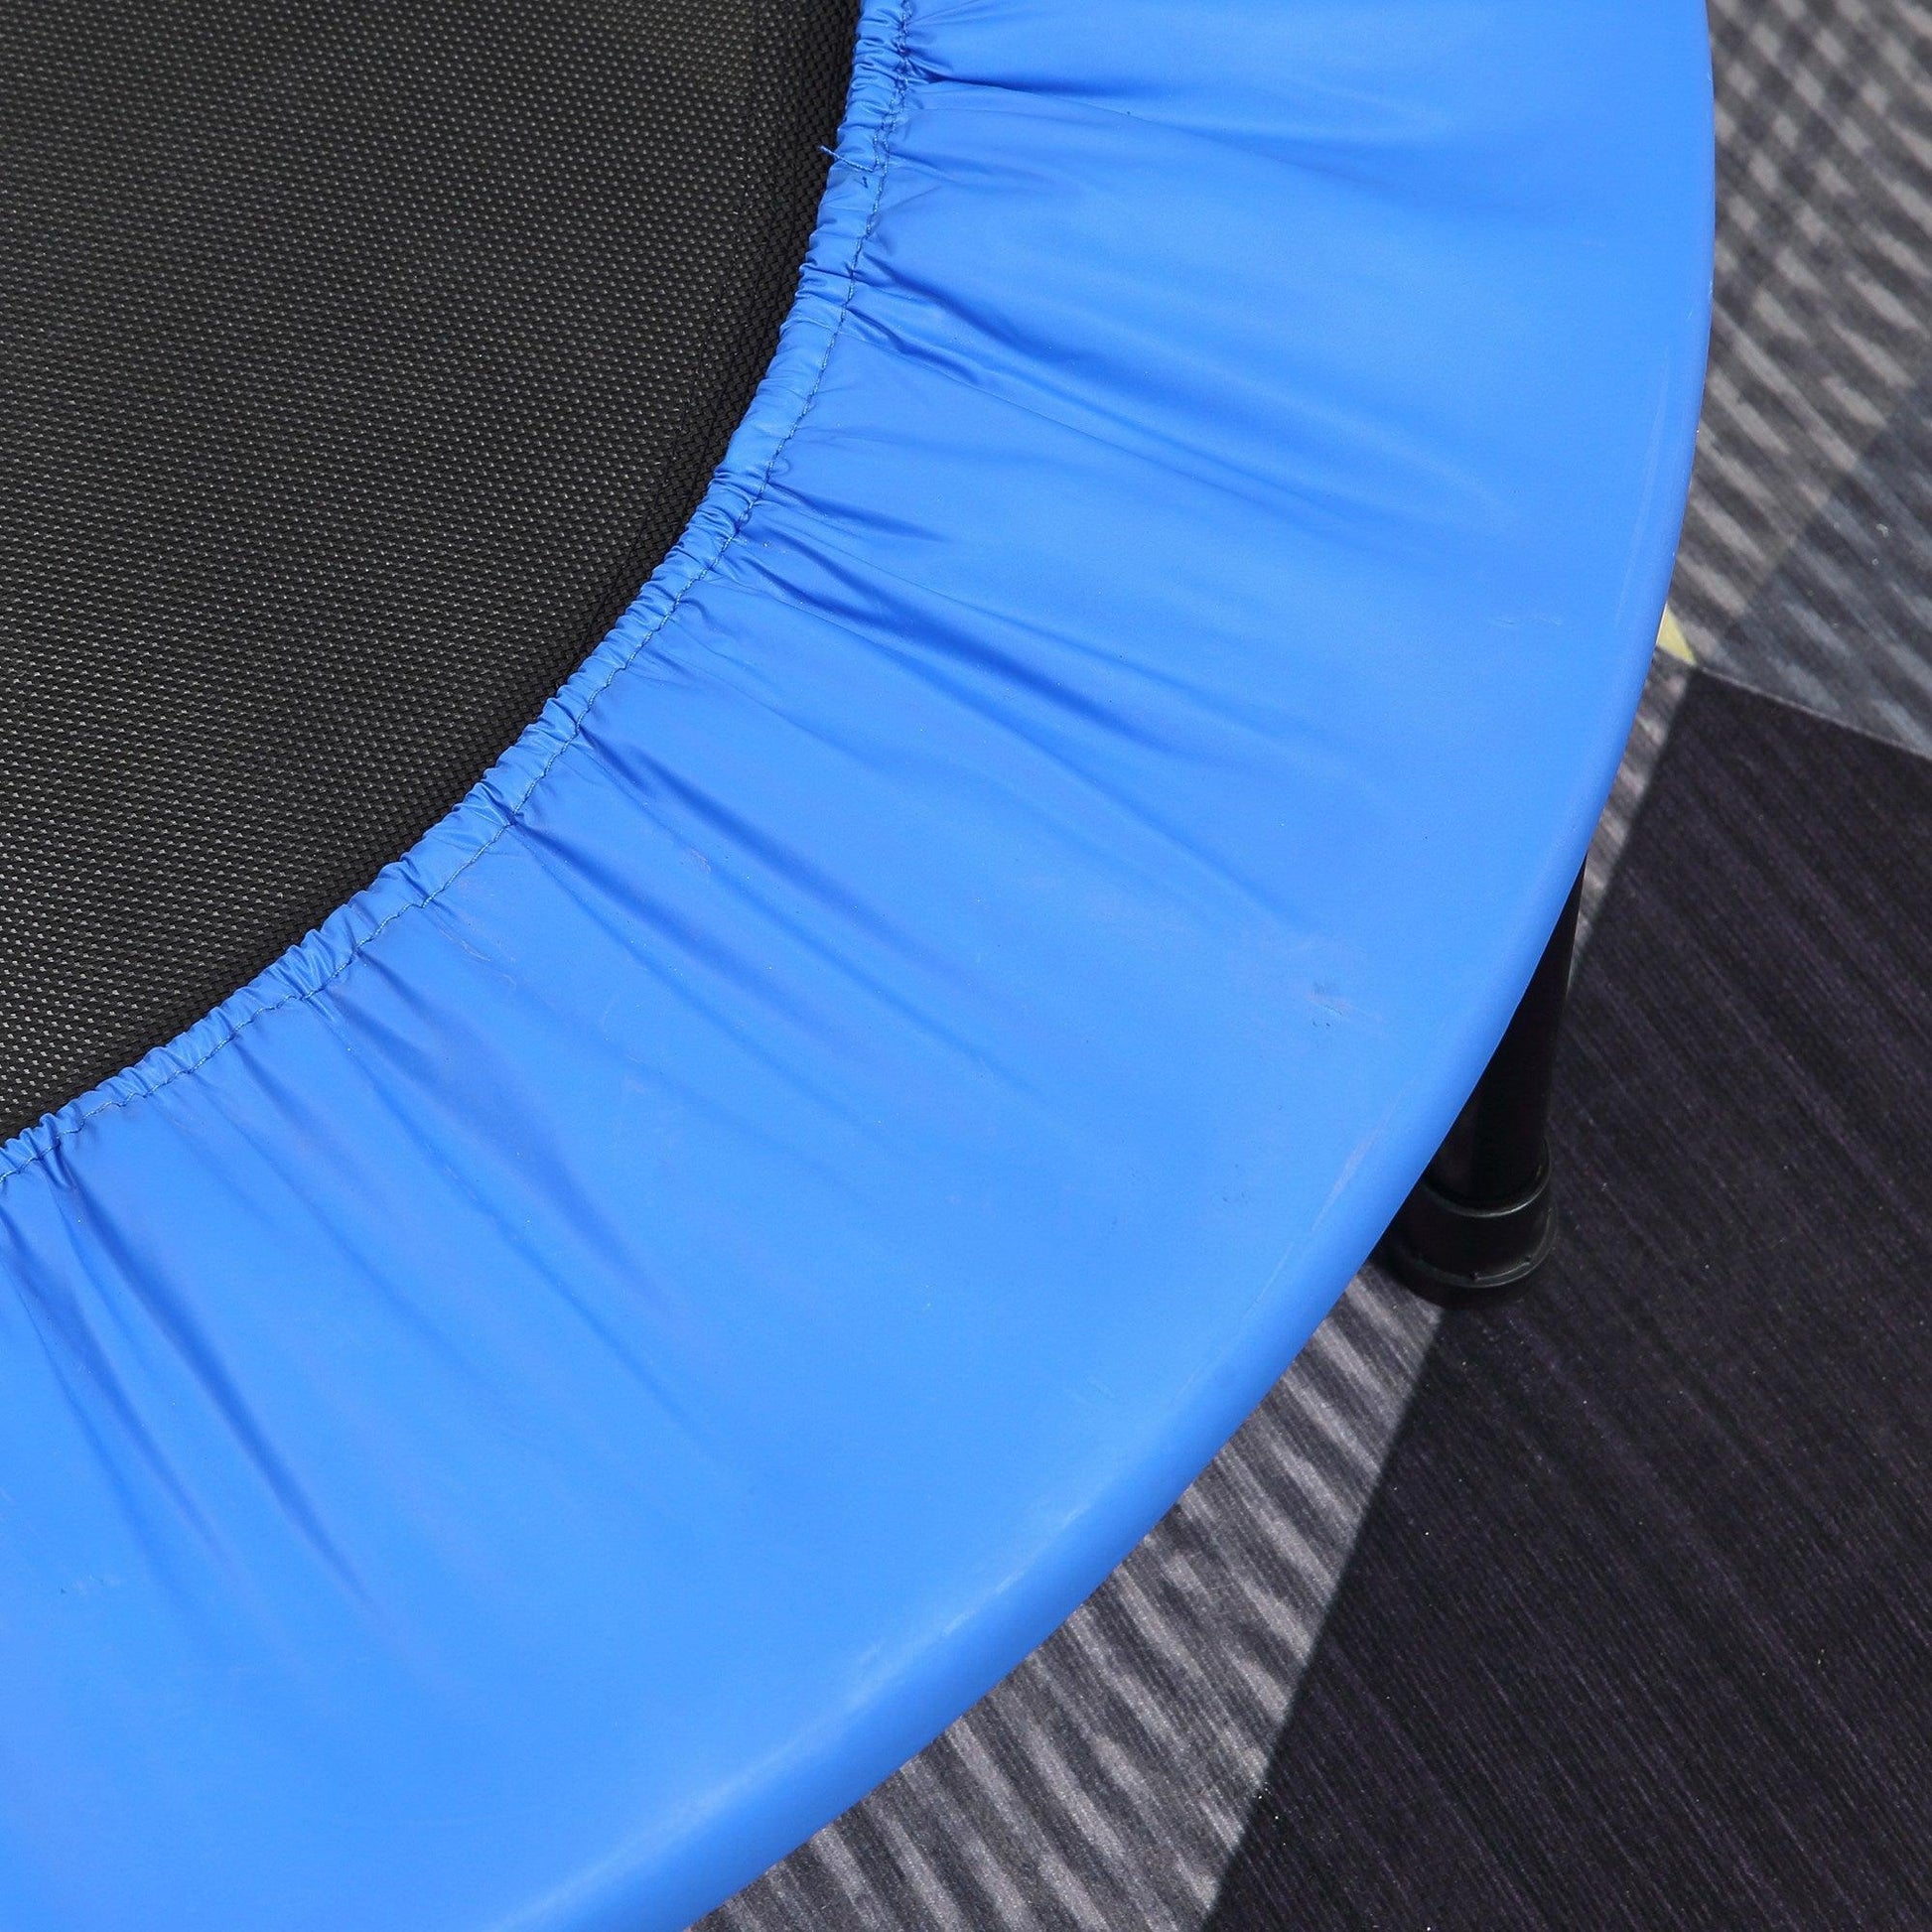 HOMCOM 96cm Foldable Mini Trampoline – Home Gym Exercise, Blue/Black - ALL4U RETAILER LTD